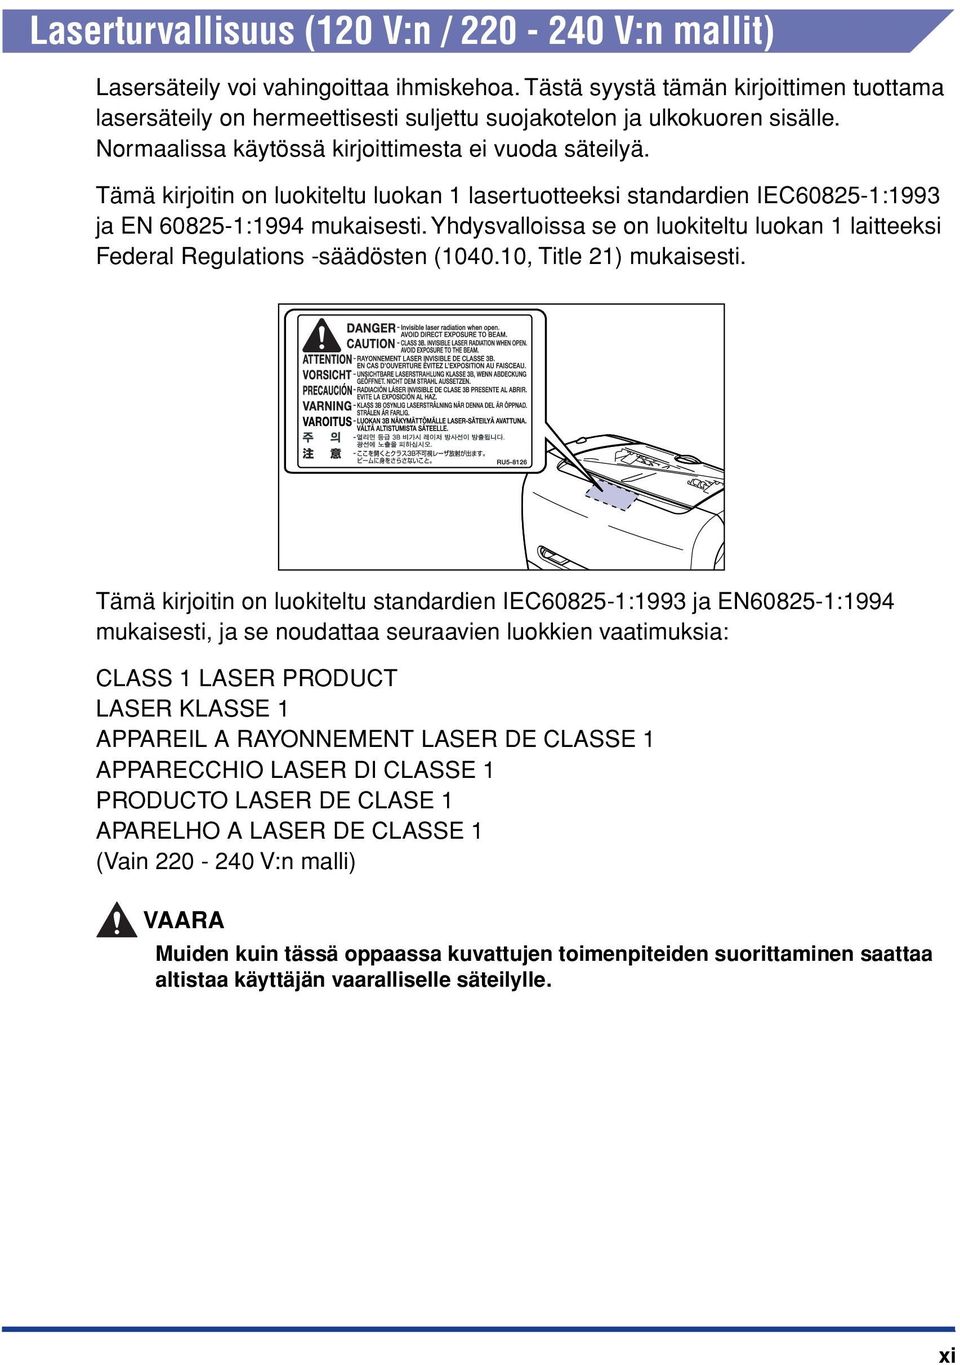 Tämä kirjoitin on luokiteltu luokan 1 lasertuotteeksi standardien IEC60825-1:1993 ja EN 60825-1:1994 mukaisesti.